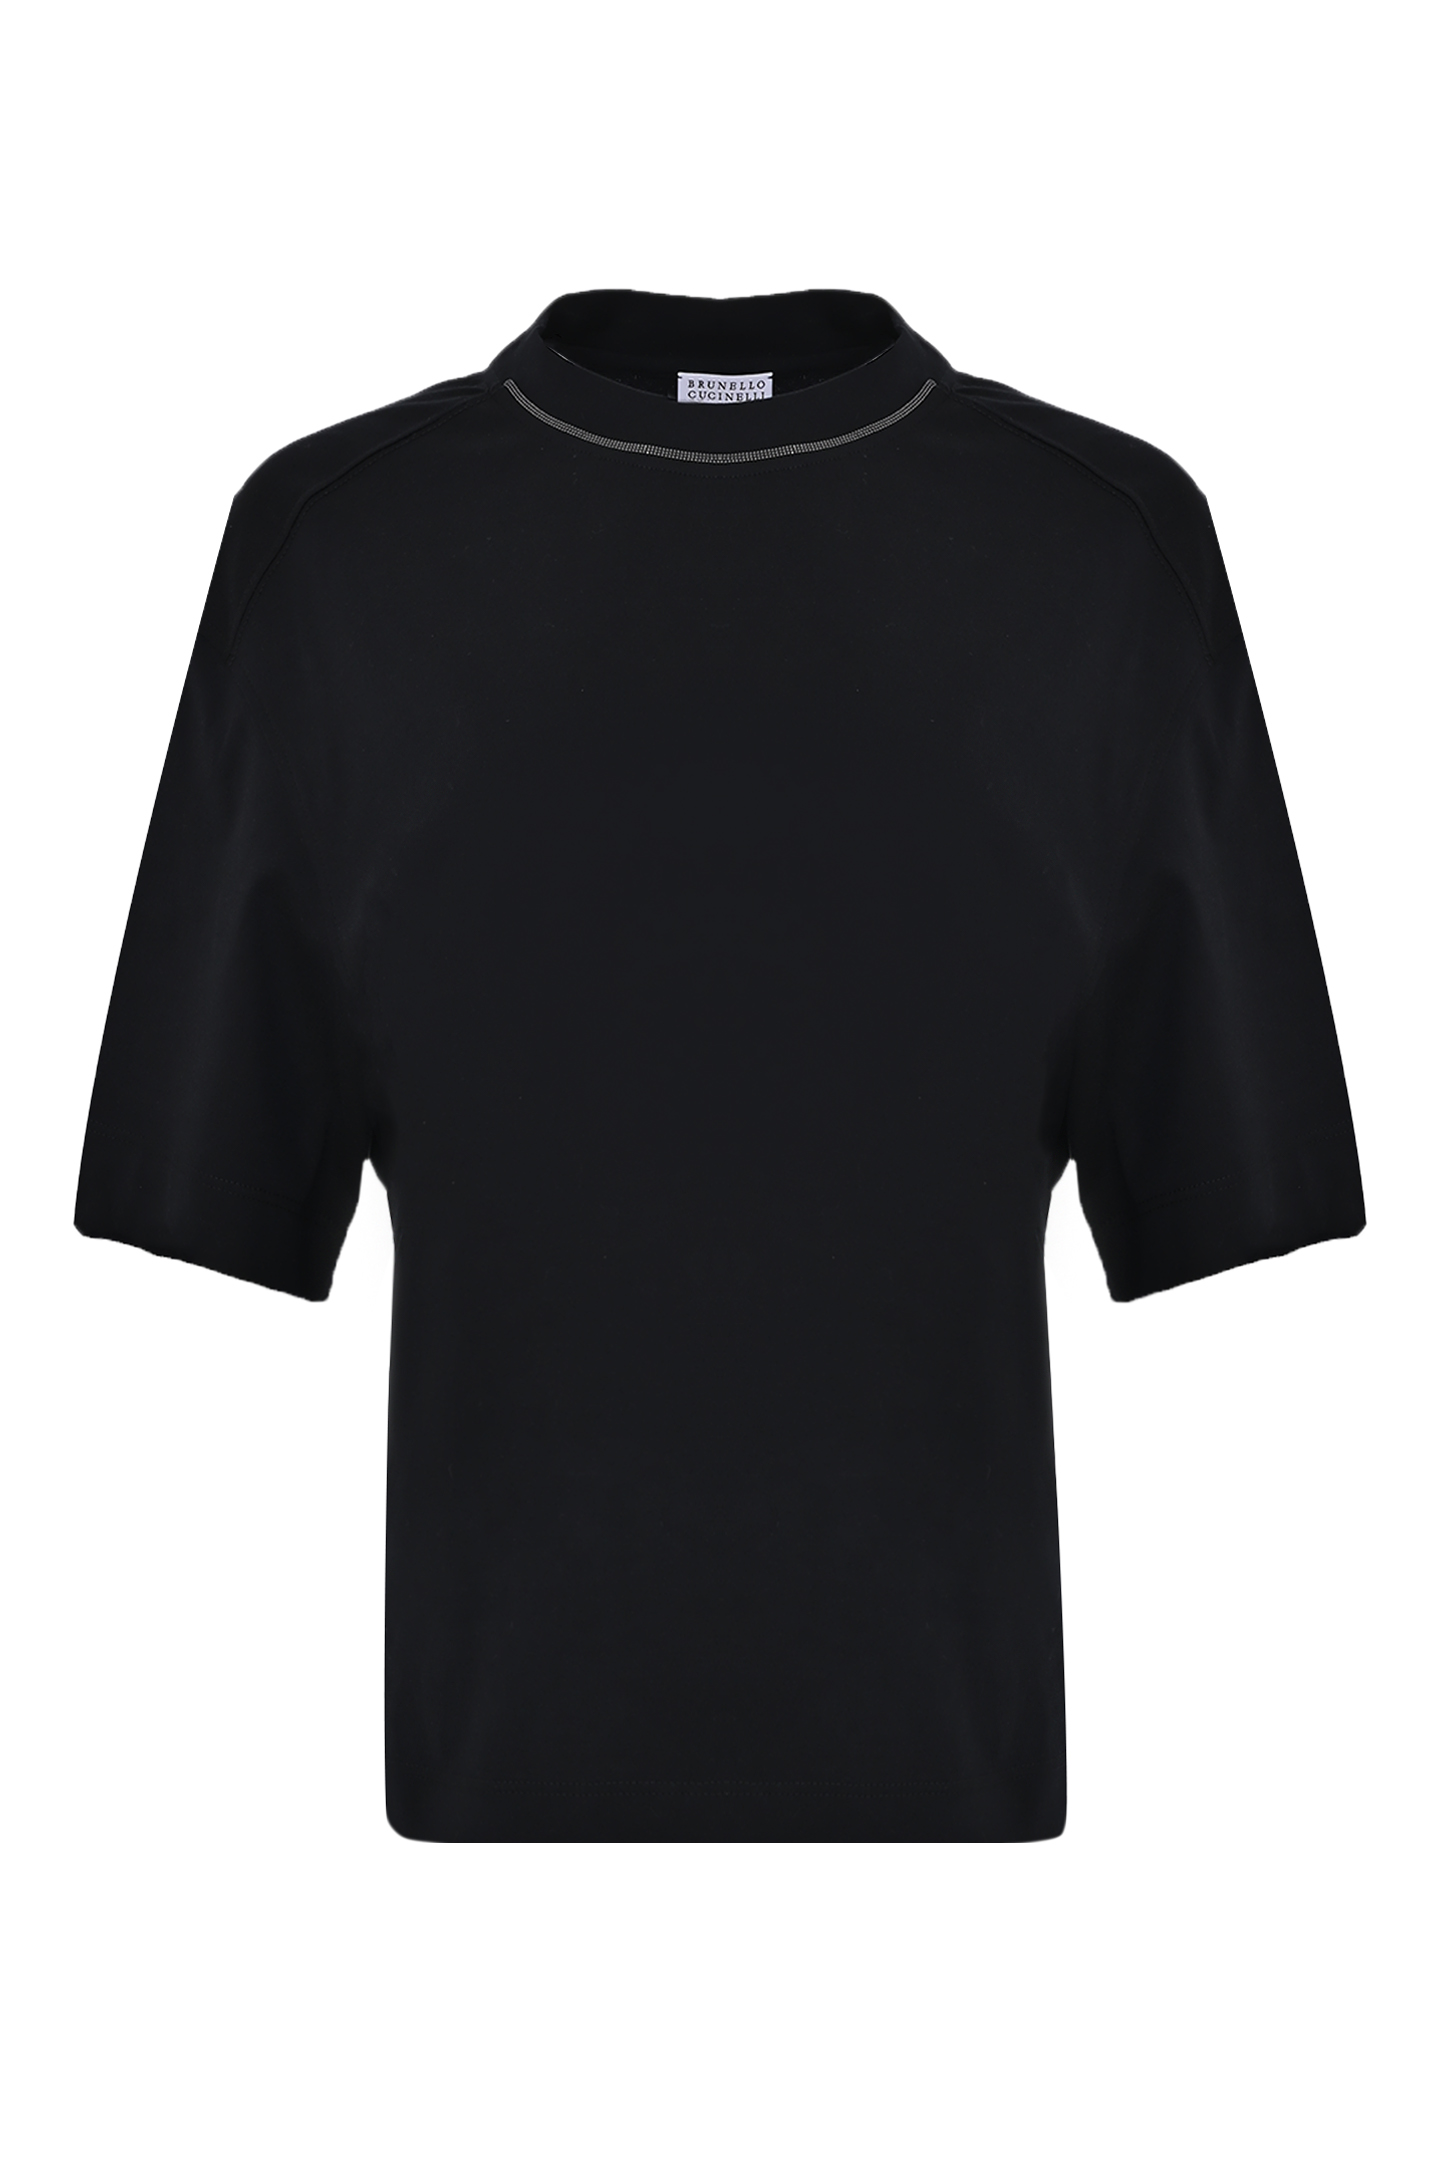 Хлопковая футболка с декором BRUNELLO  CUCINELLI M0T81EL330, цвет: Черный, Женский